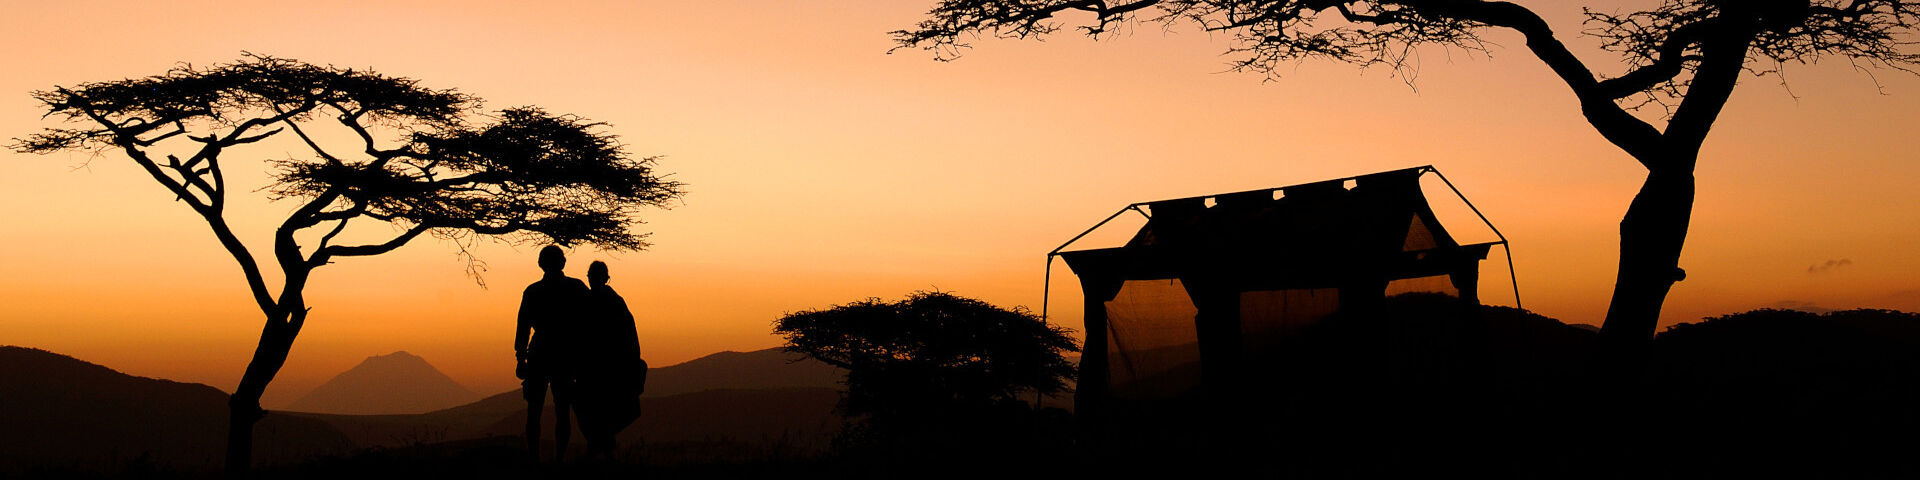 Tours and Safaris to Tarangire National Park Tanzania Fly Camping